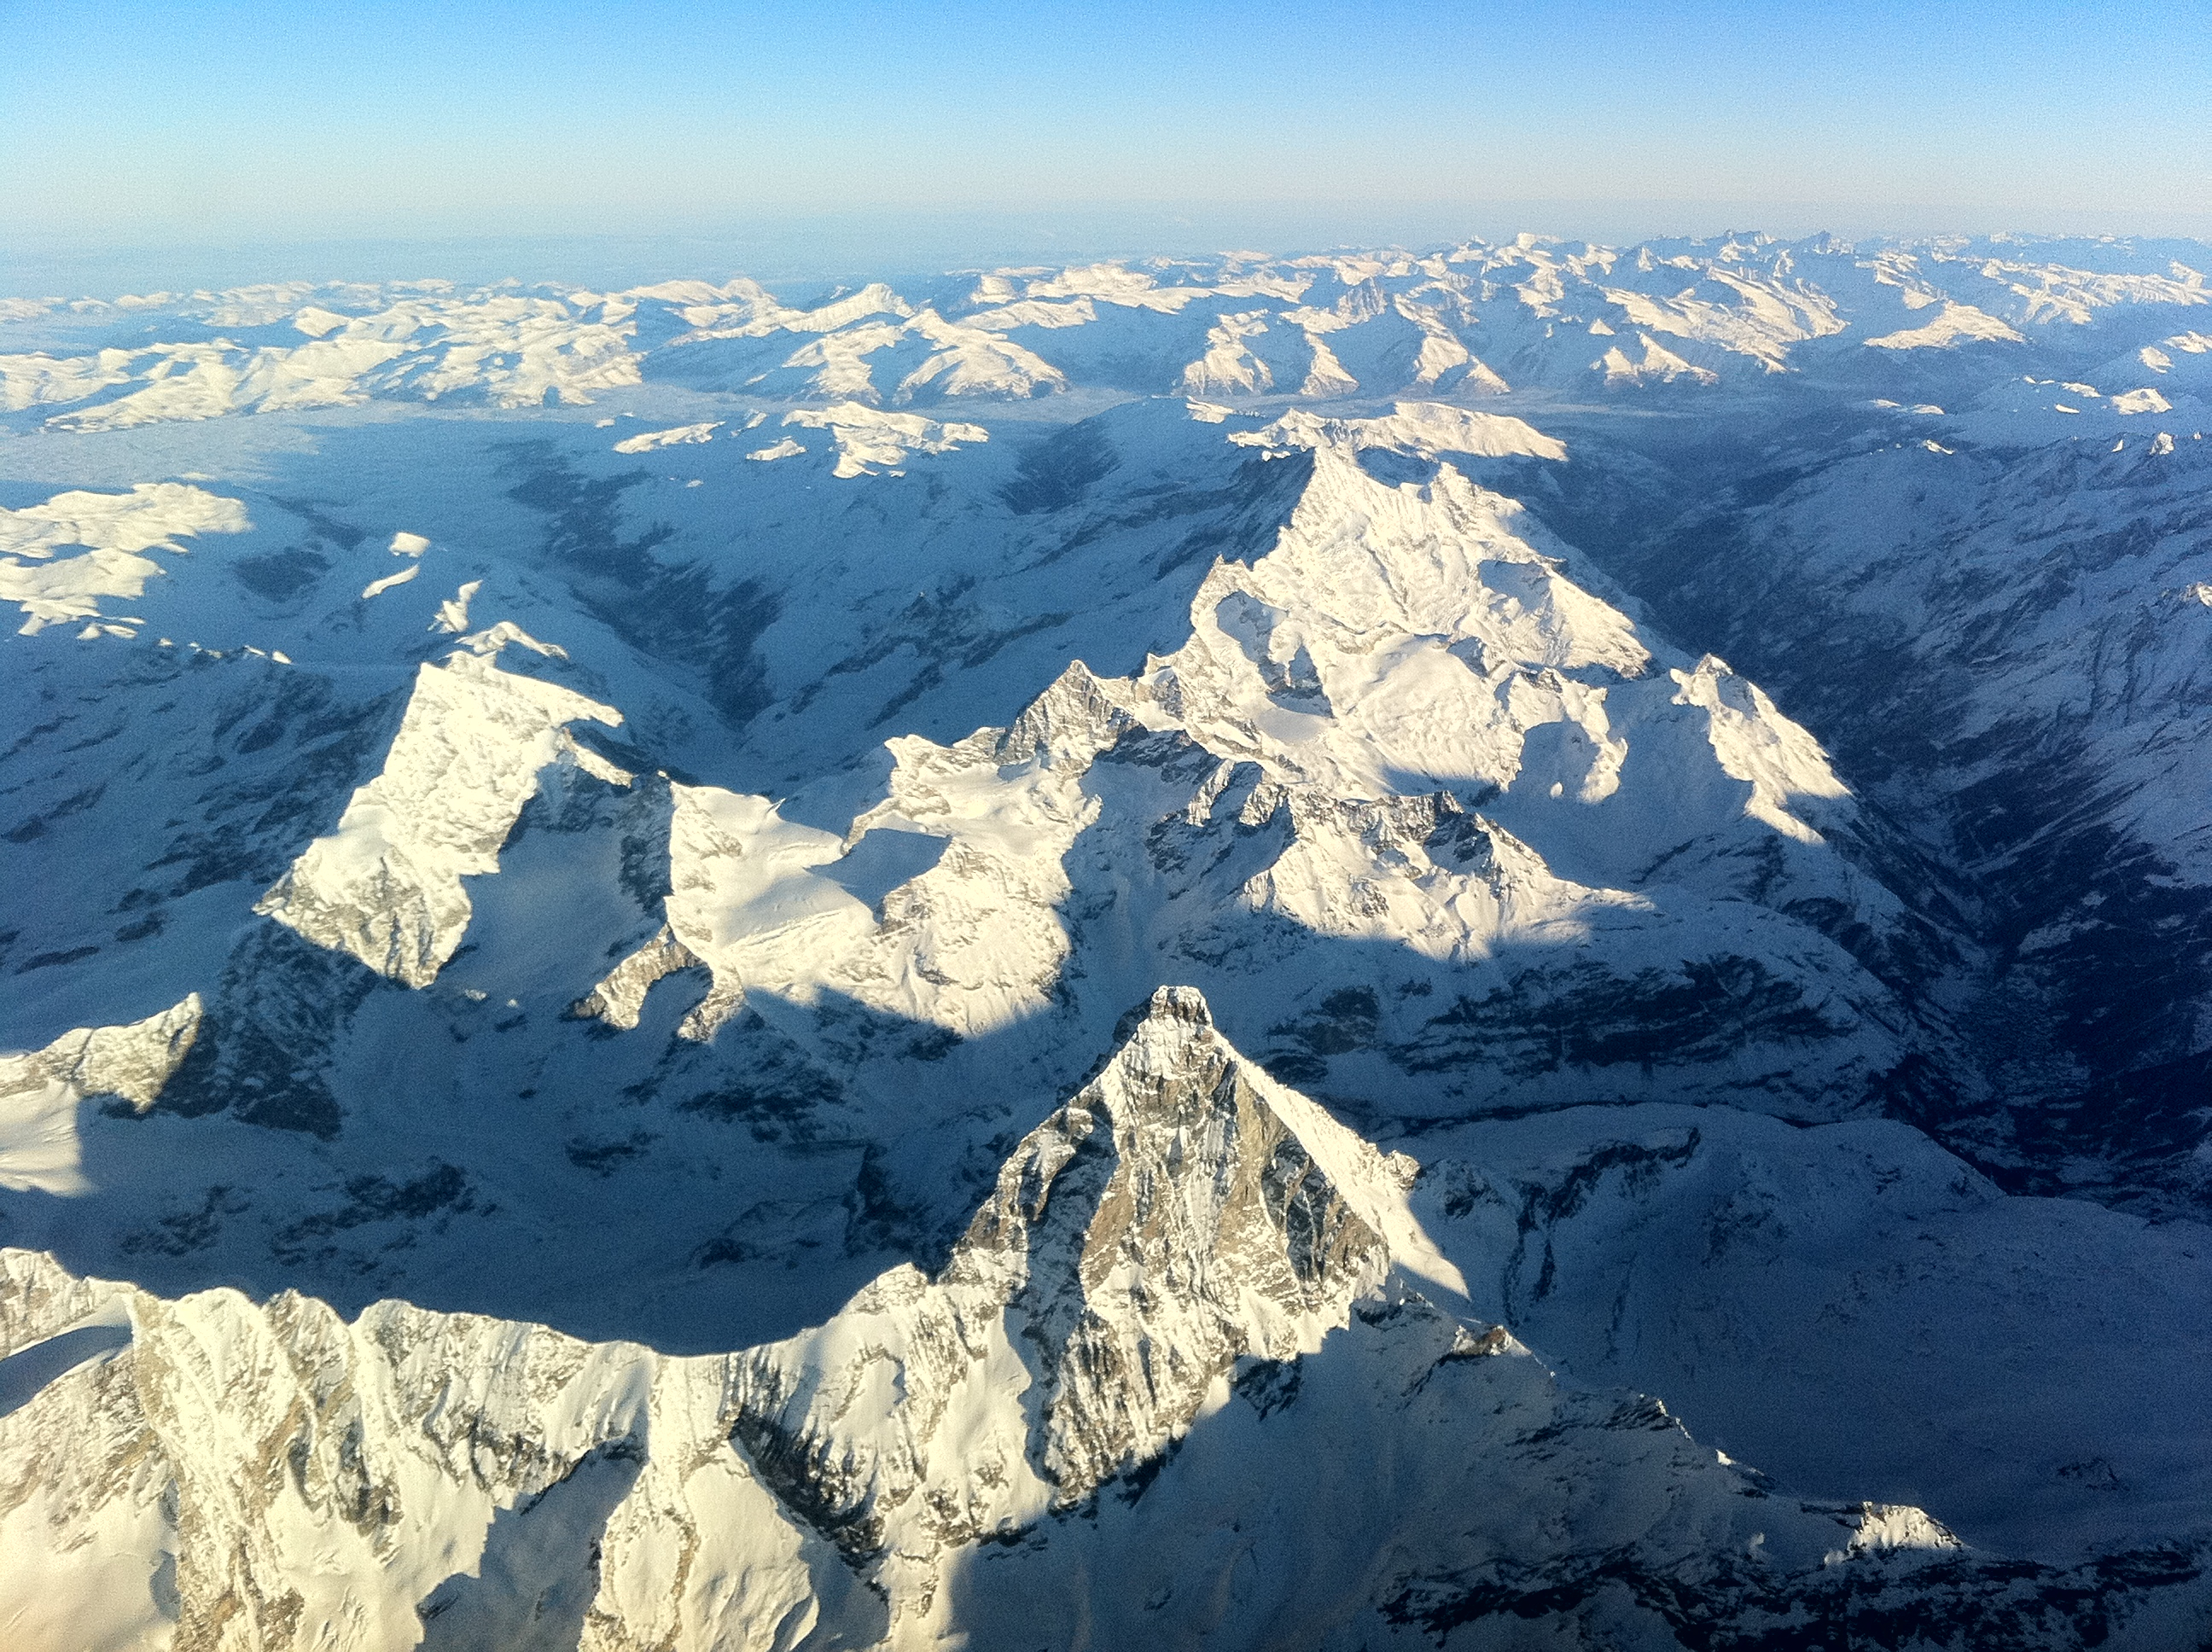 An airline pilot’s view of the Matterhorn